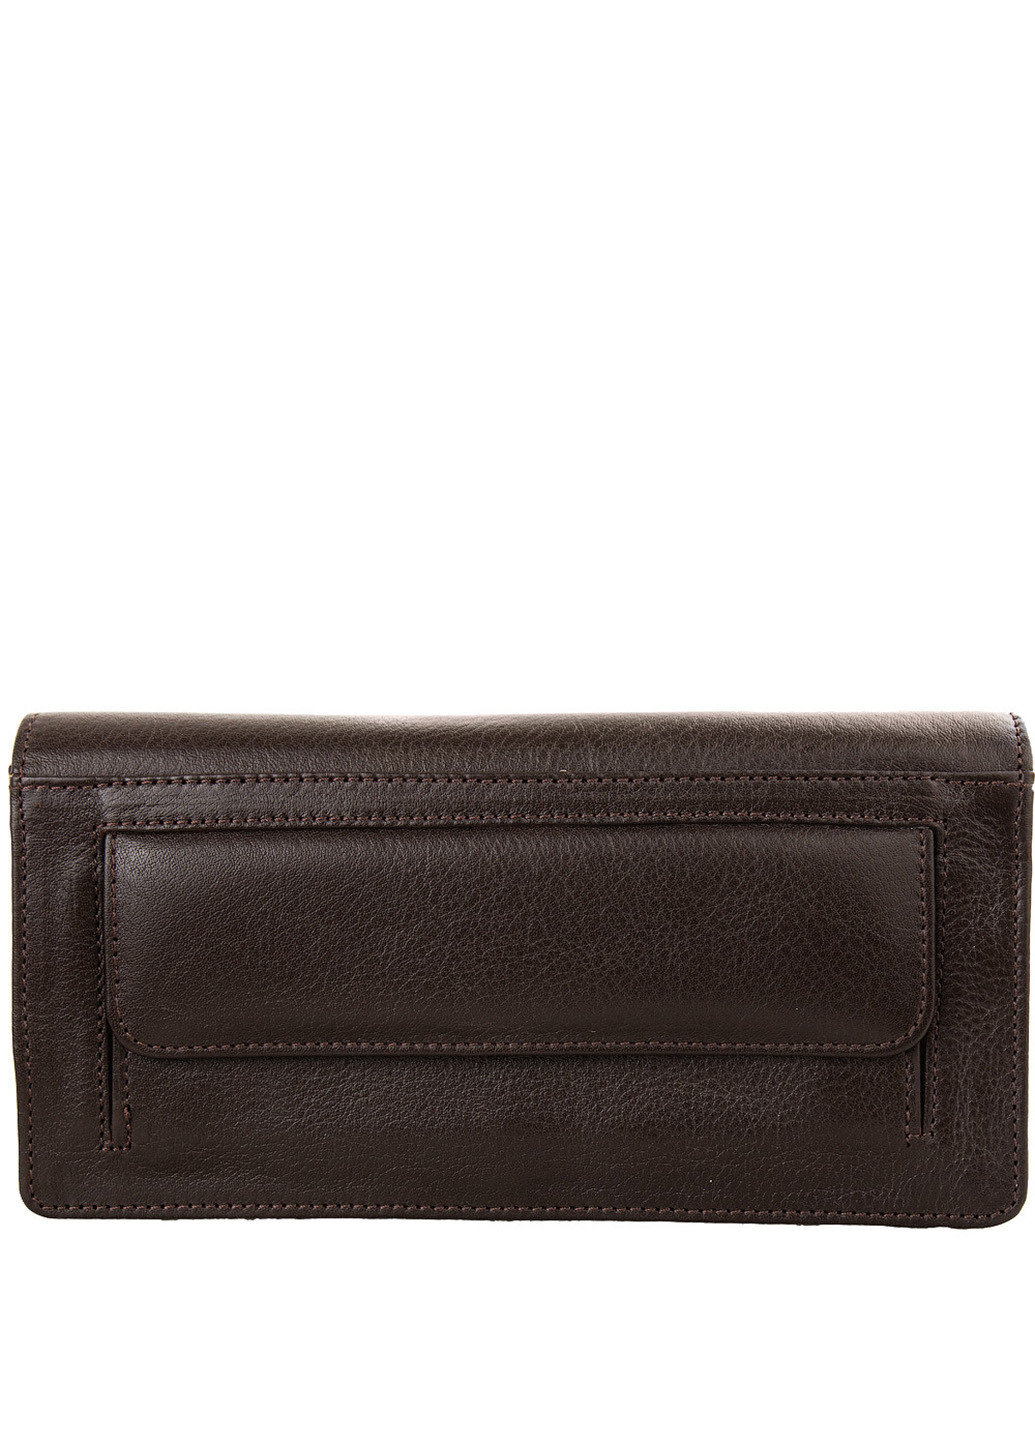 Жіночий шкіряний гаманець 19х9,5х2 см Grass (216146215)